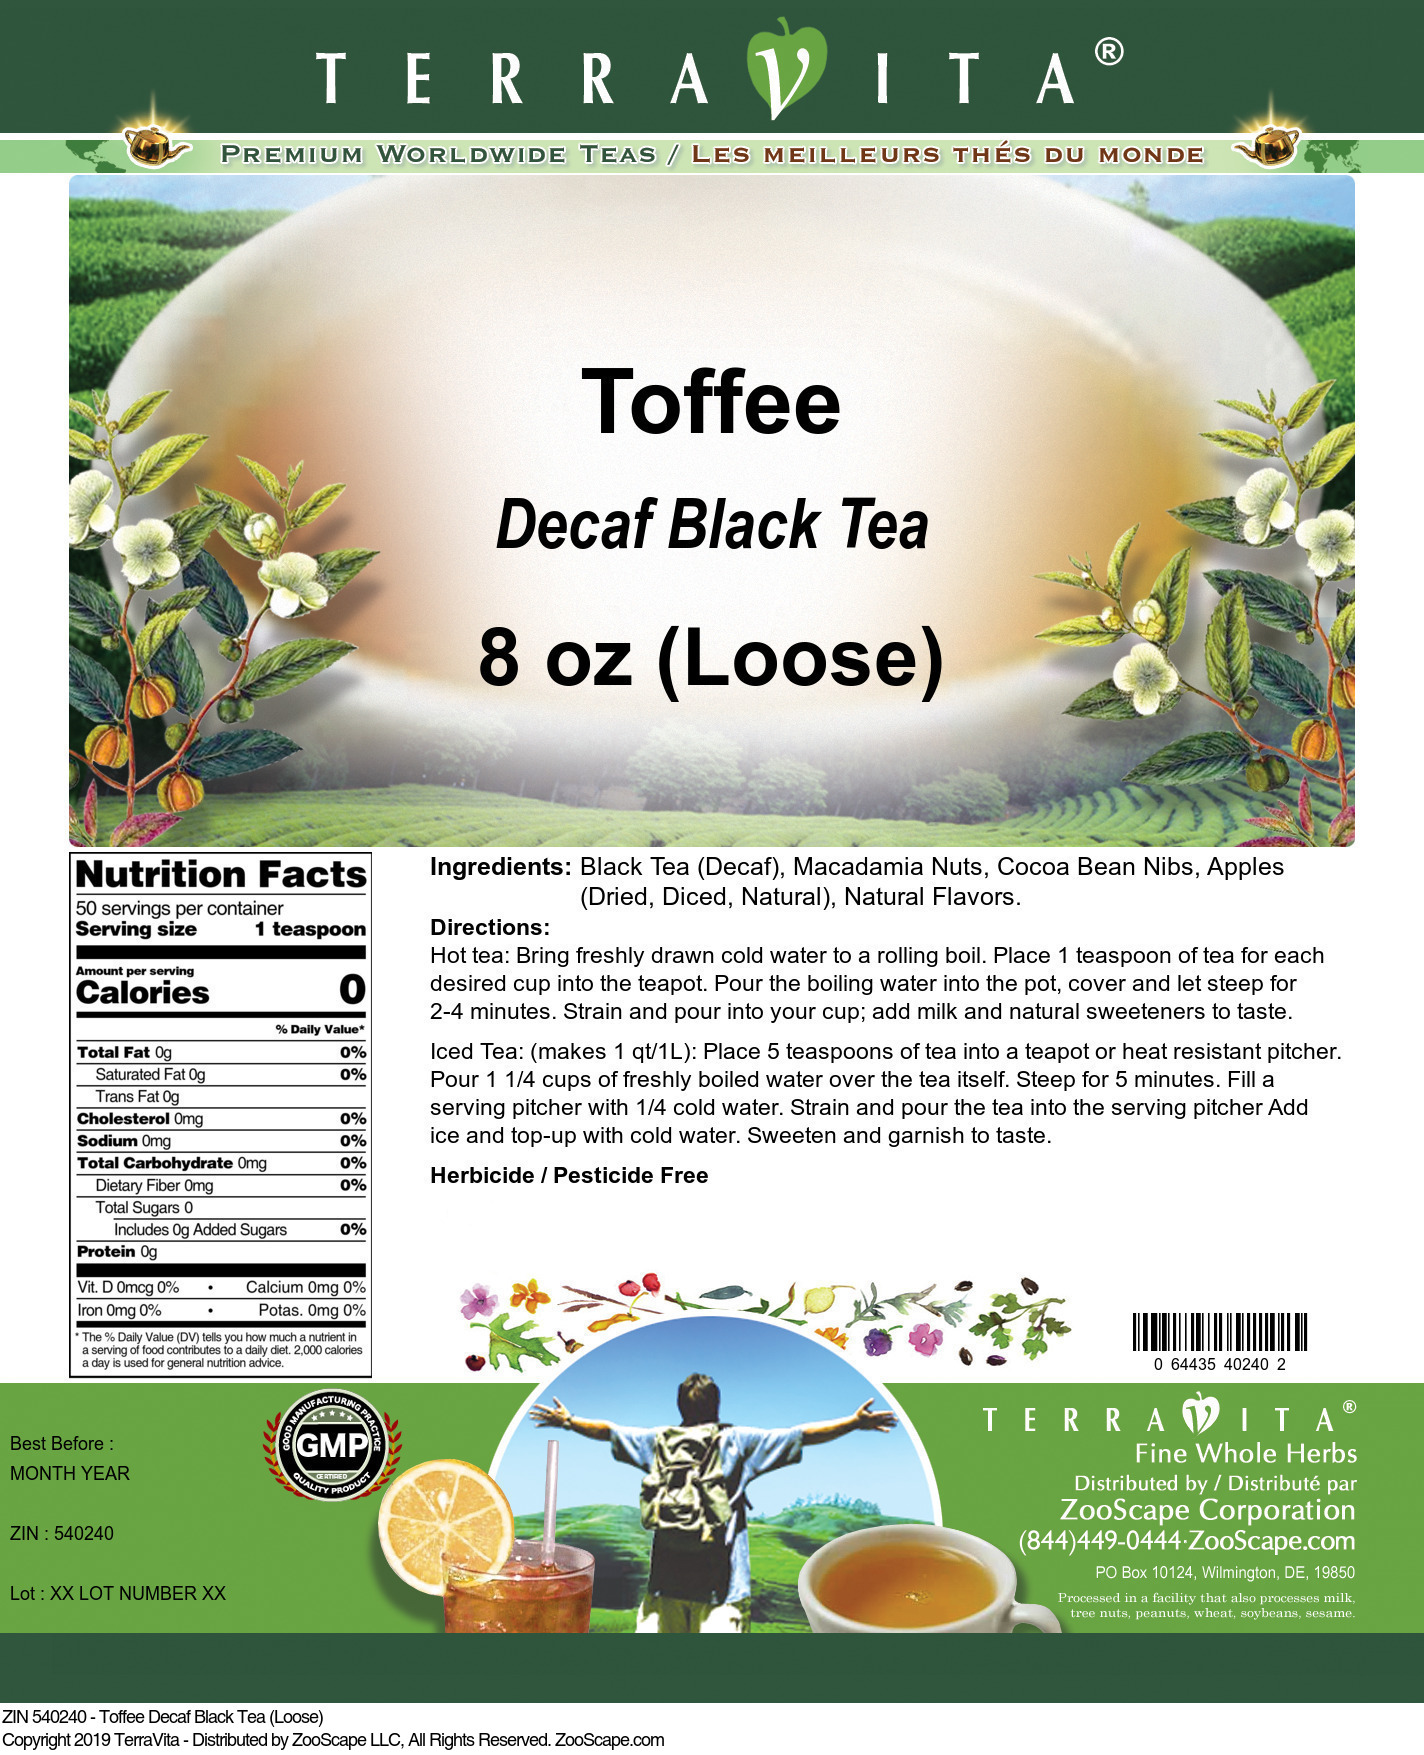 Toffee Decaf Black Tea (Loose) - Label